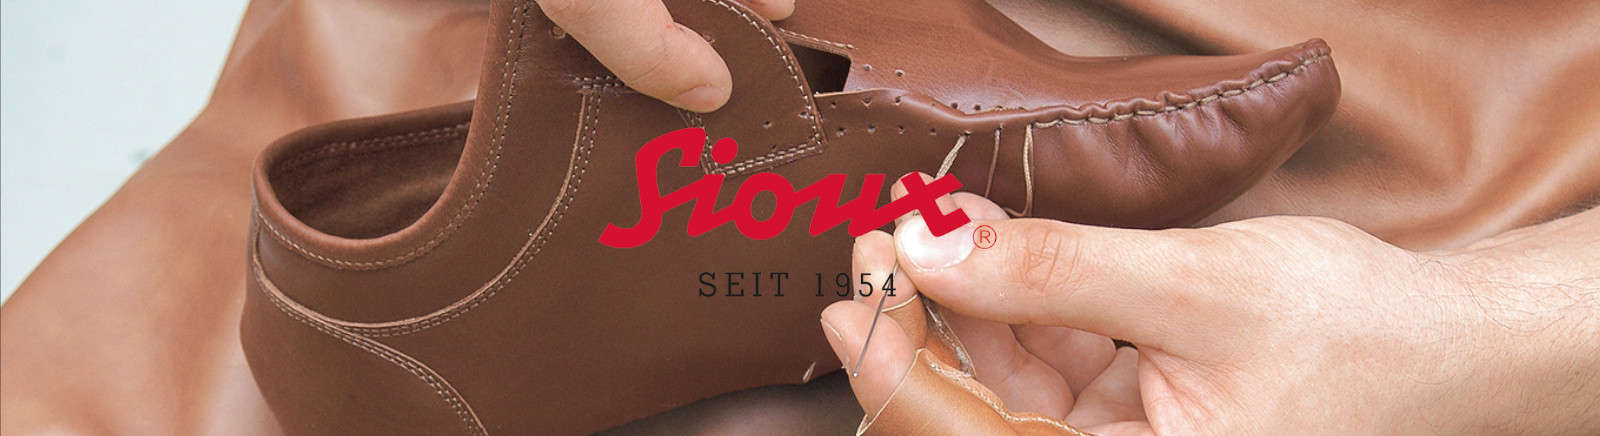 Sioux Markenschuhe online entdecken im Schuhe Shop von Juppen